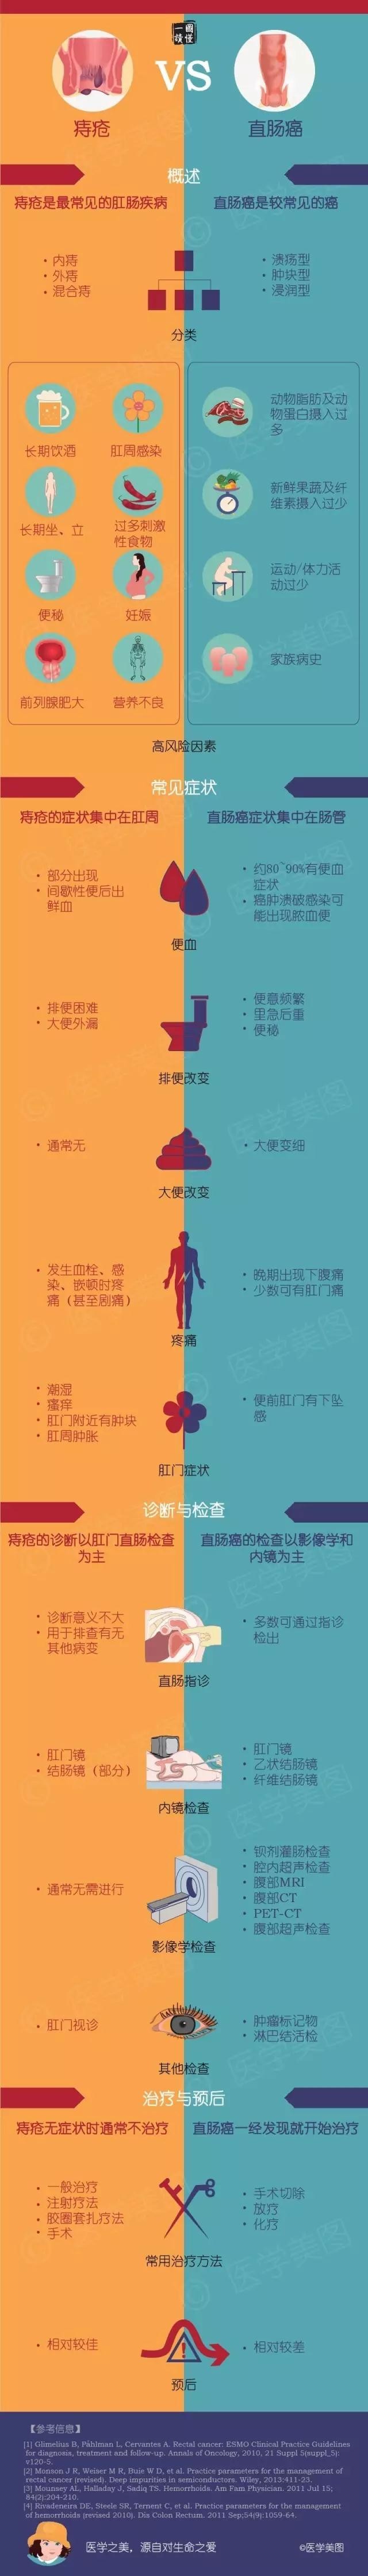 图说丨痔疮vs直肠癌